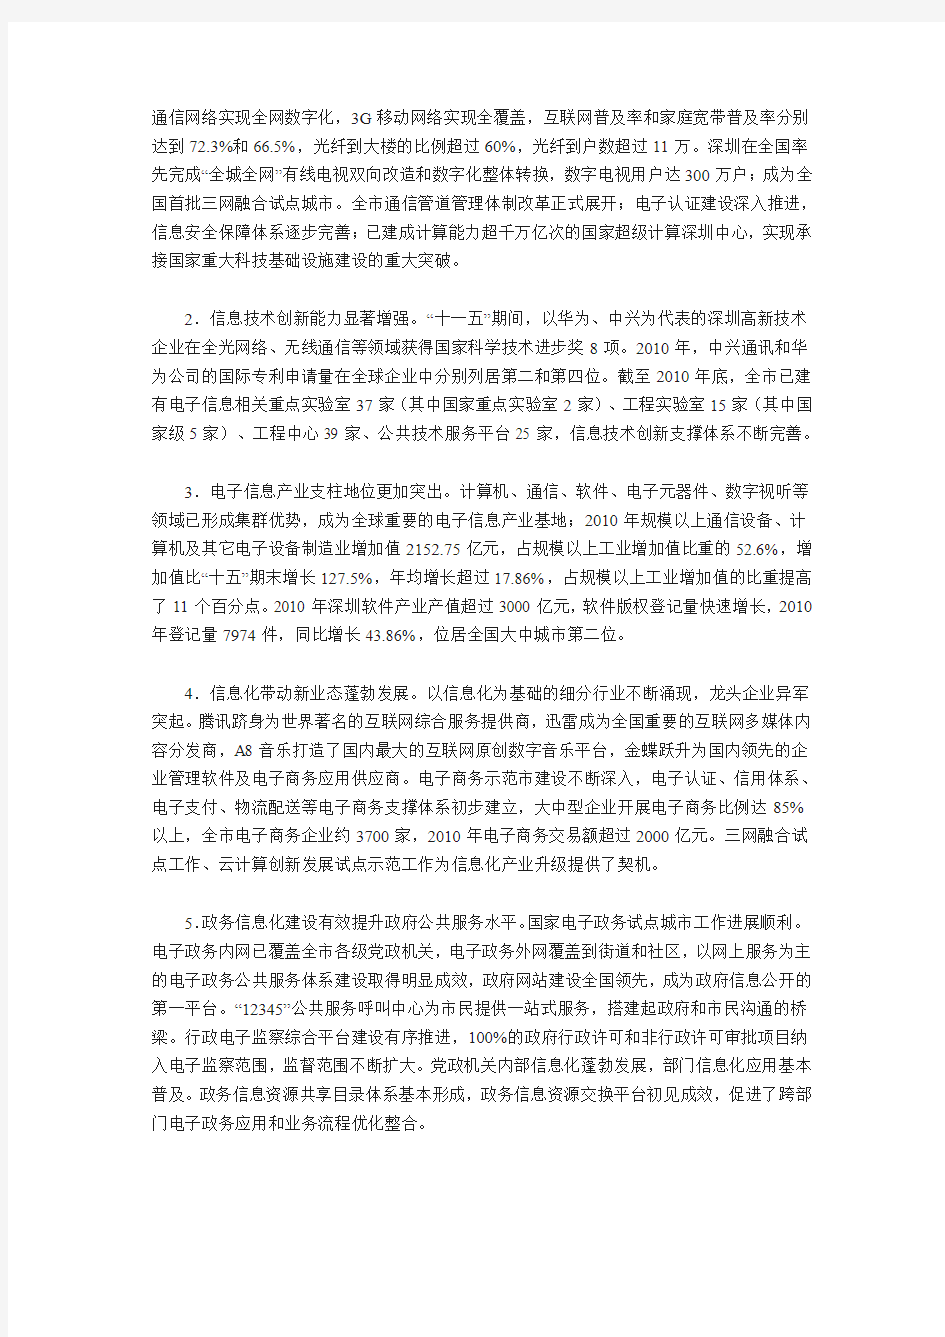 深圳市信息化发展“十二五”规划